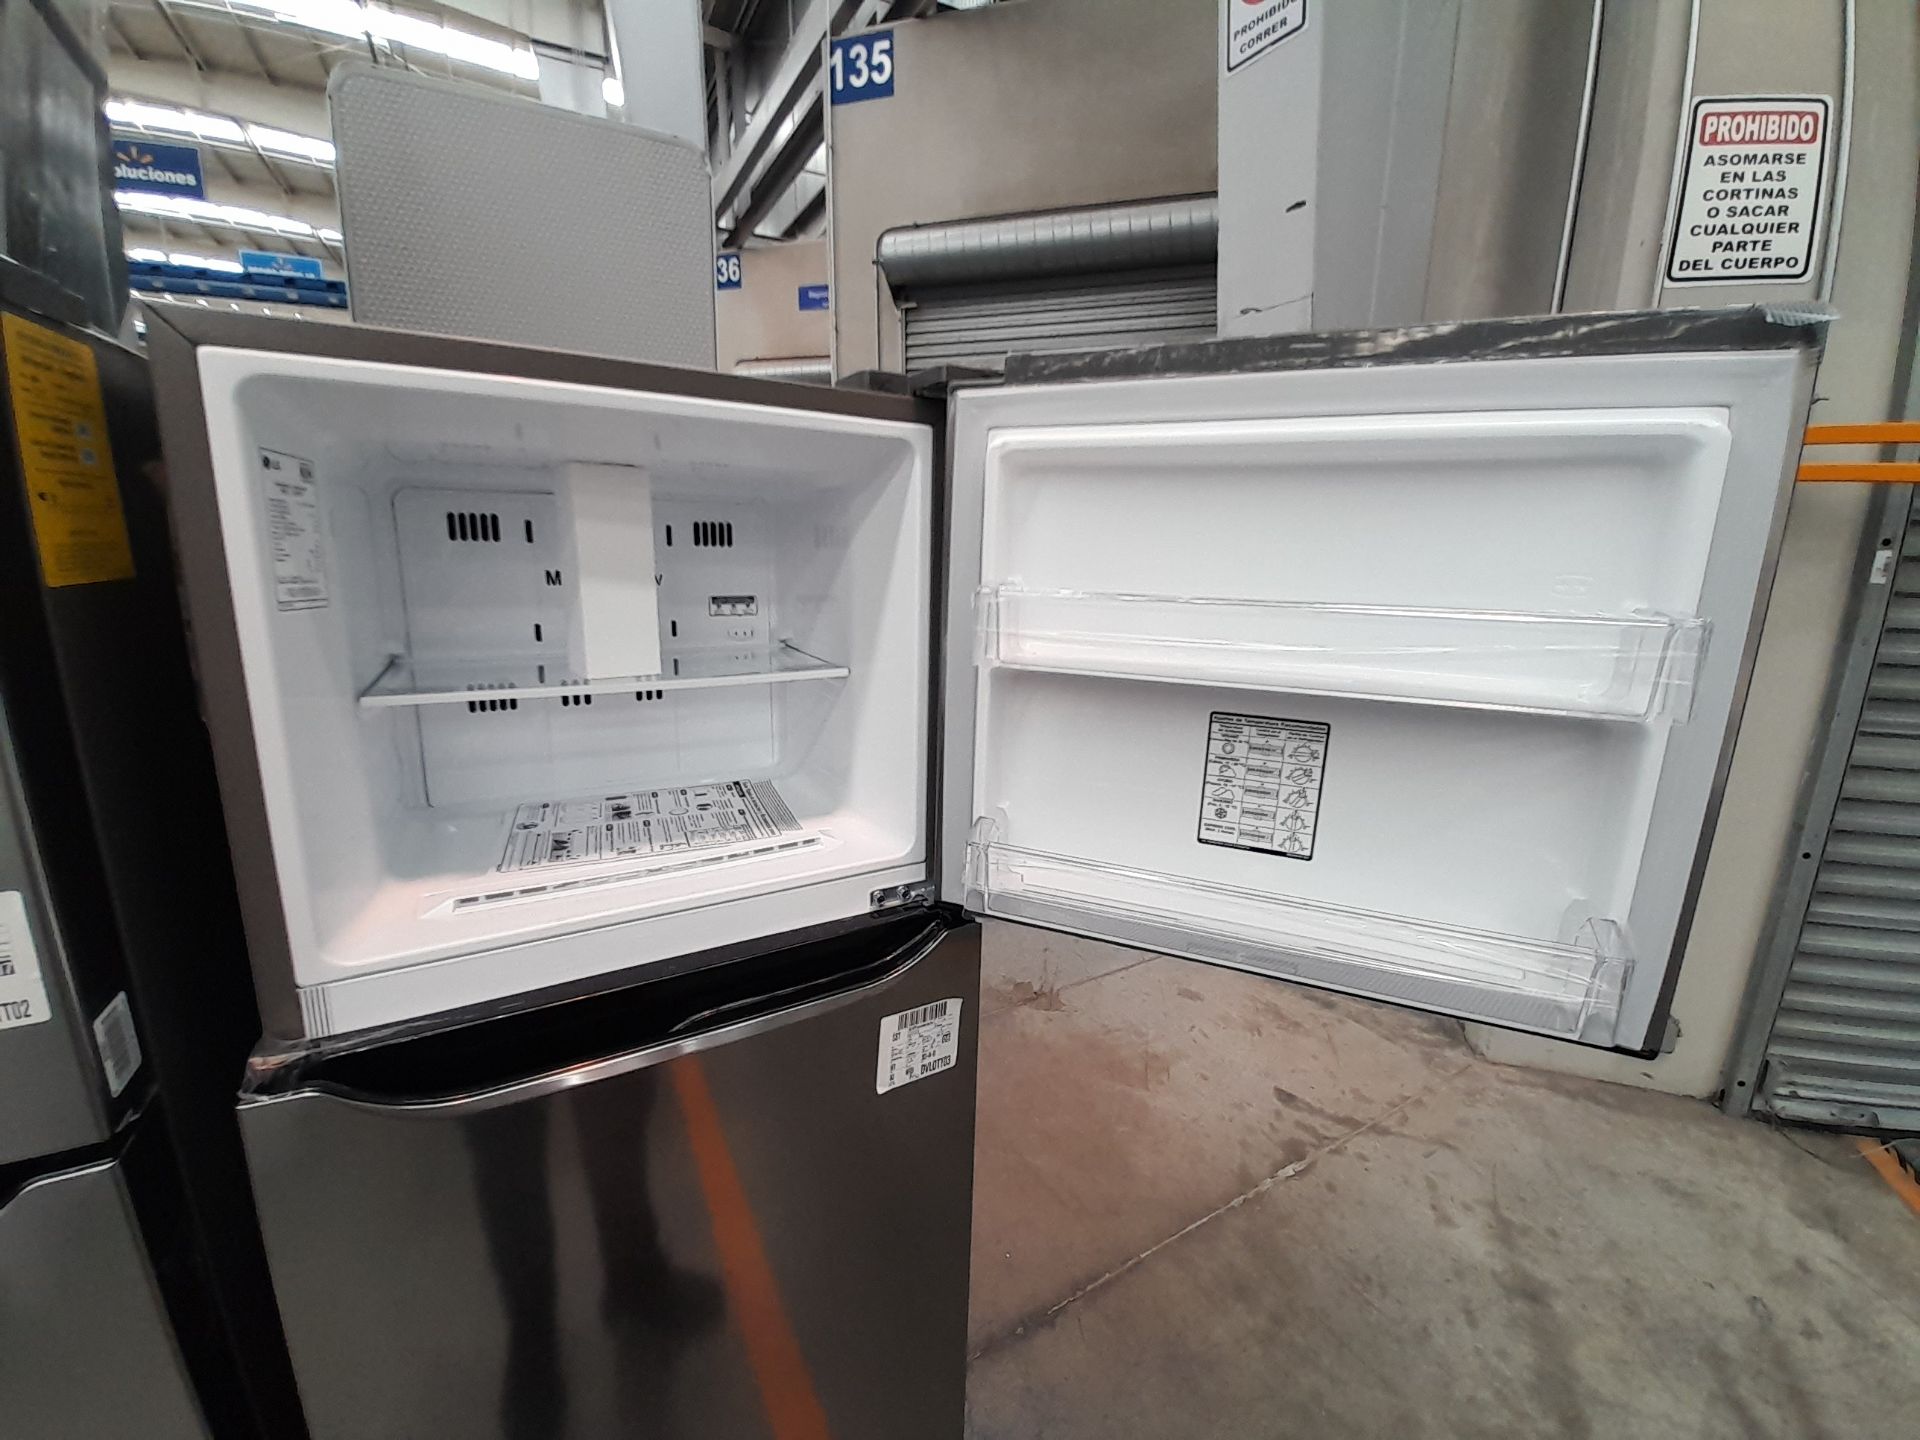 Lote de 2 refrigeradores contiene: 1 refrigerador Marca LG, Modelo GT29BPPK, Color GRIS; 1 refriger - Image 6 of 8